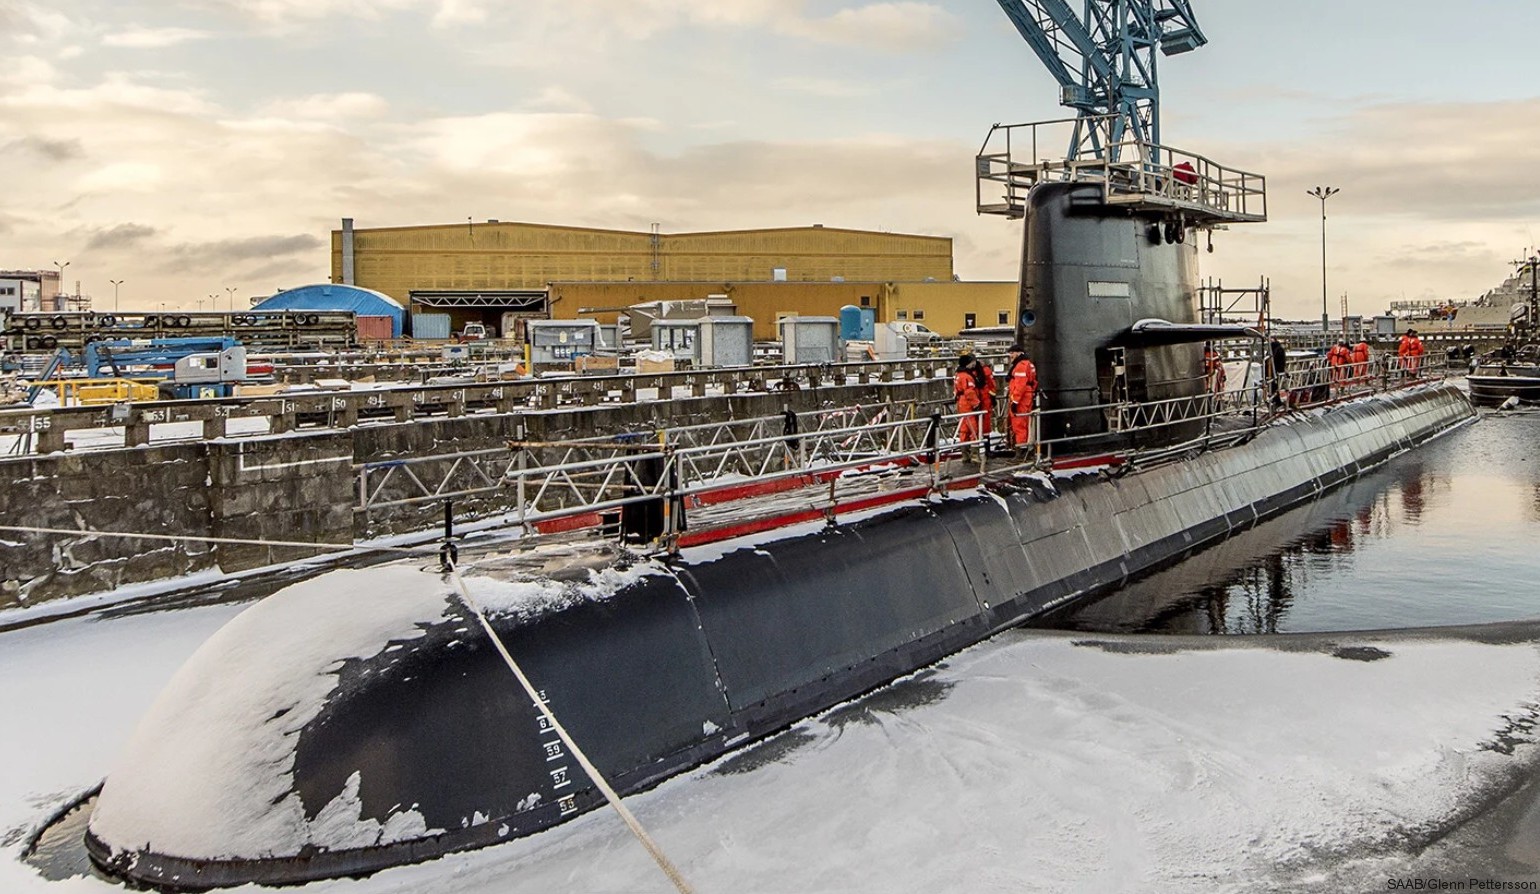 hswms hms halland hnd gotland class submarine ssk swedish navy svenska marinen försvarsmakten kockums 10